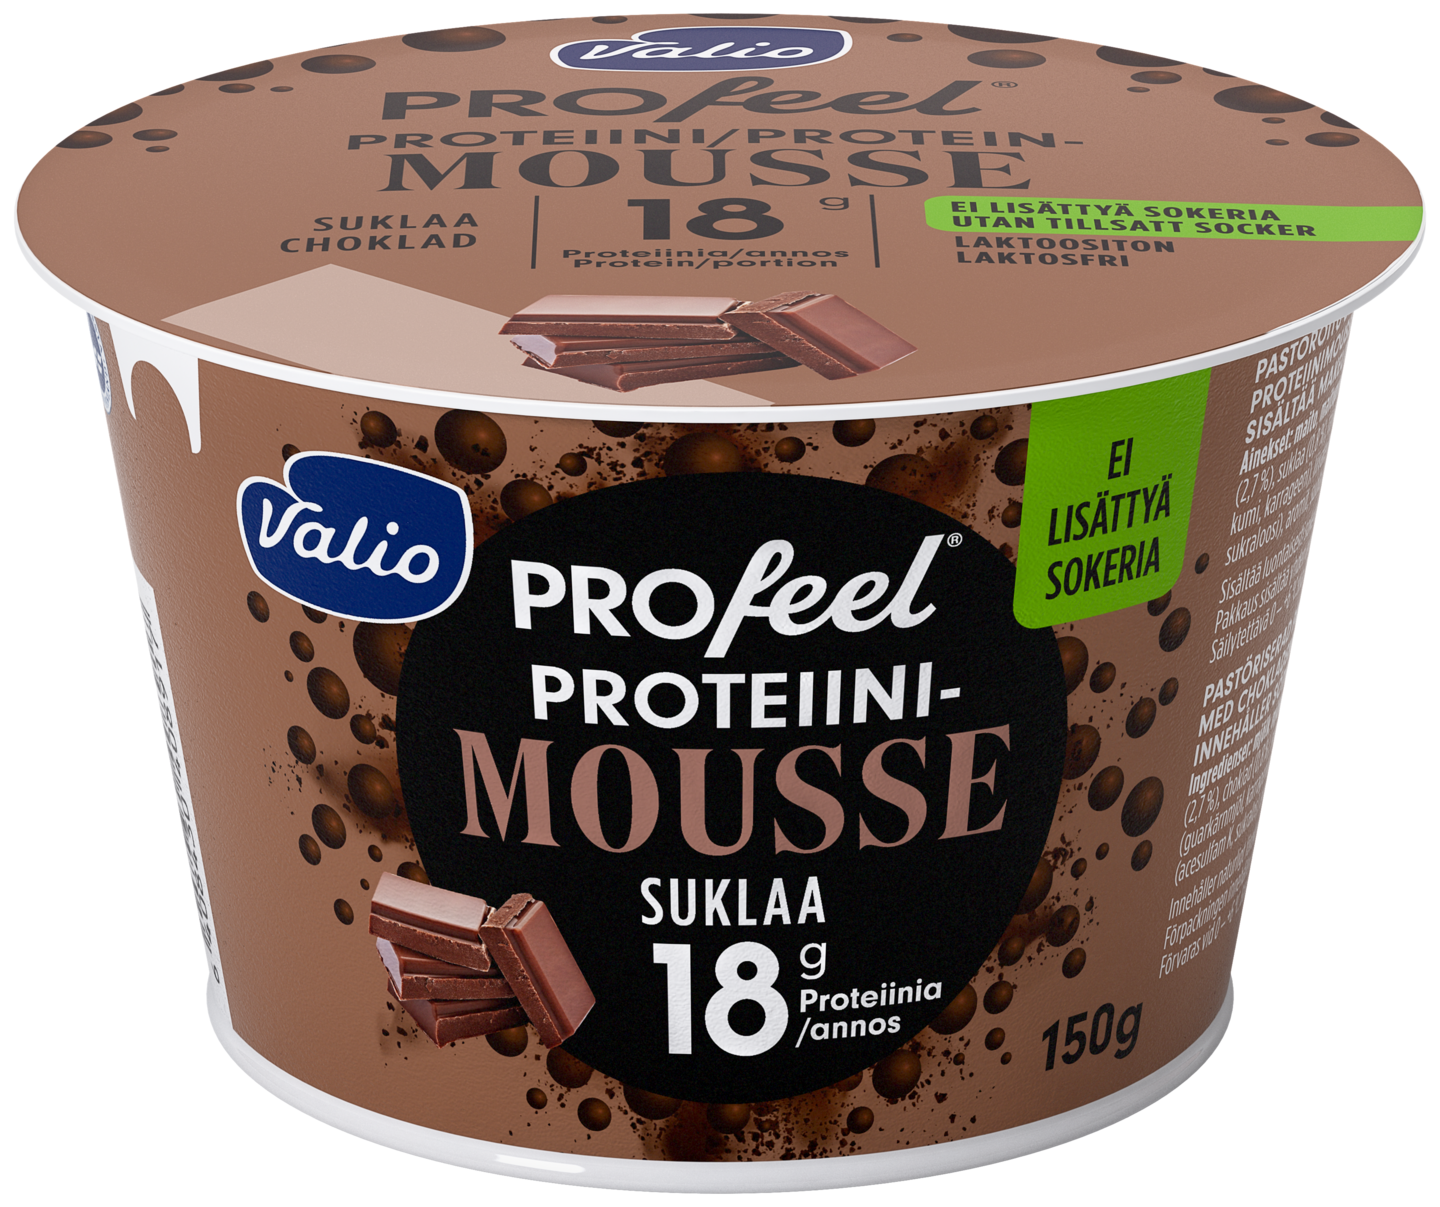 Valio Profeel proteiinimousse 150g suklaa laktoositon | K-Ruoka Verkkokauppa